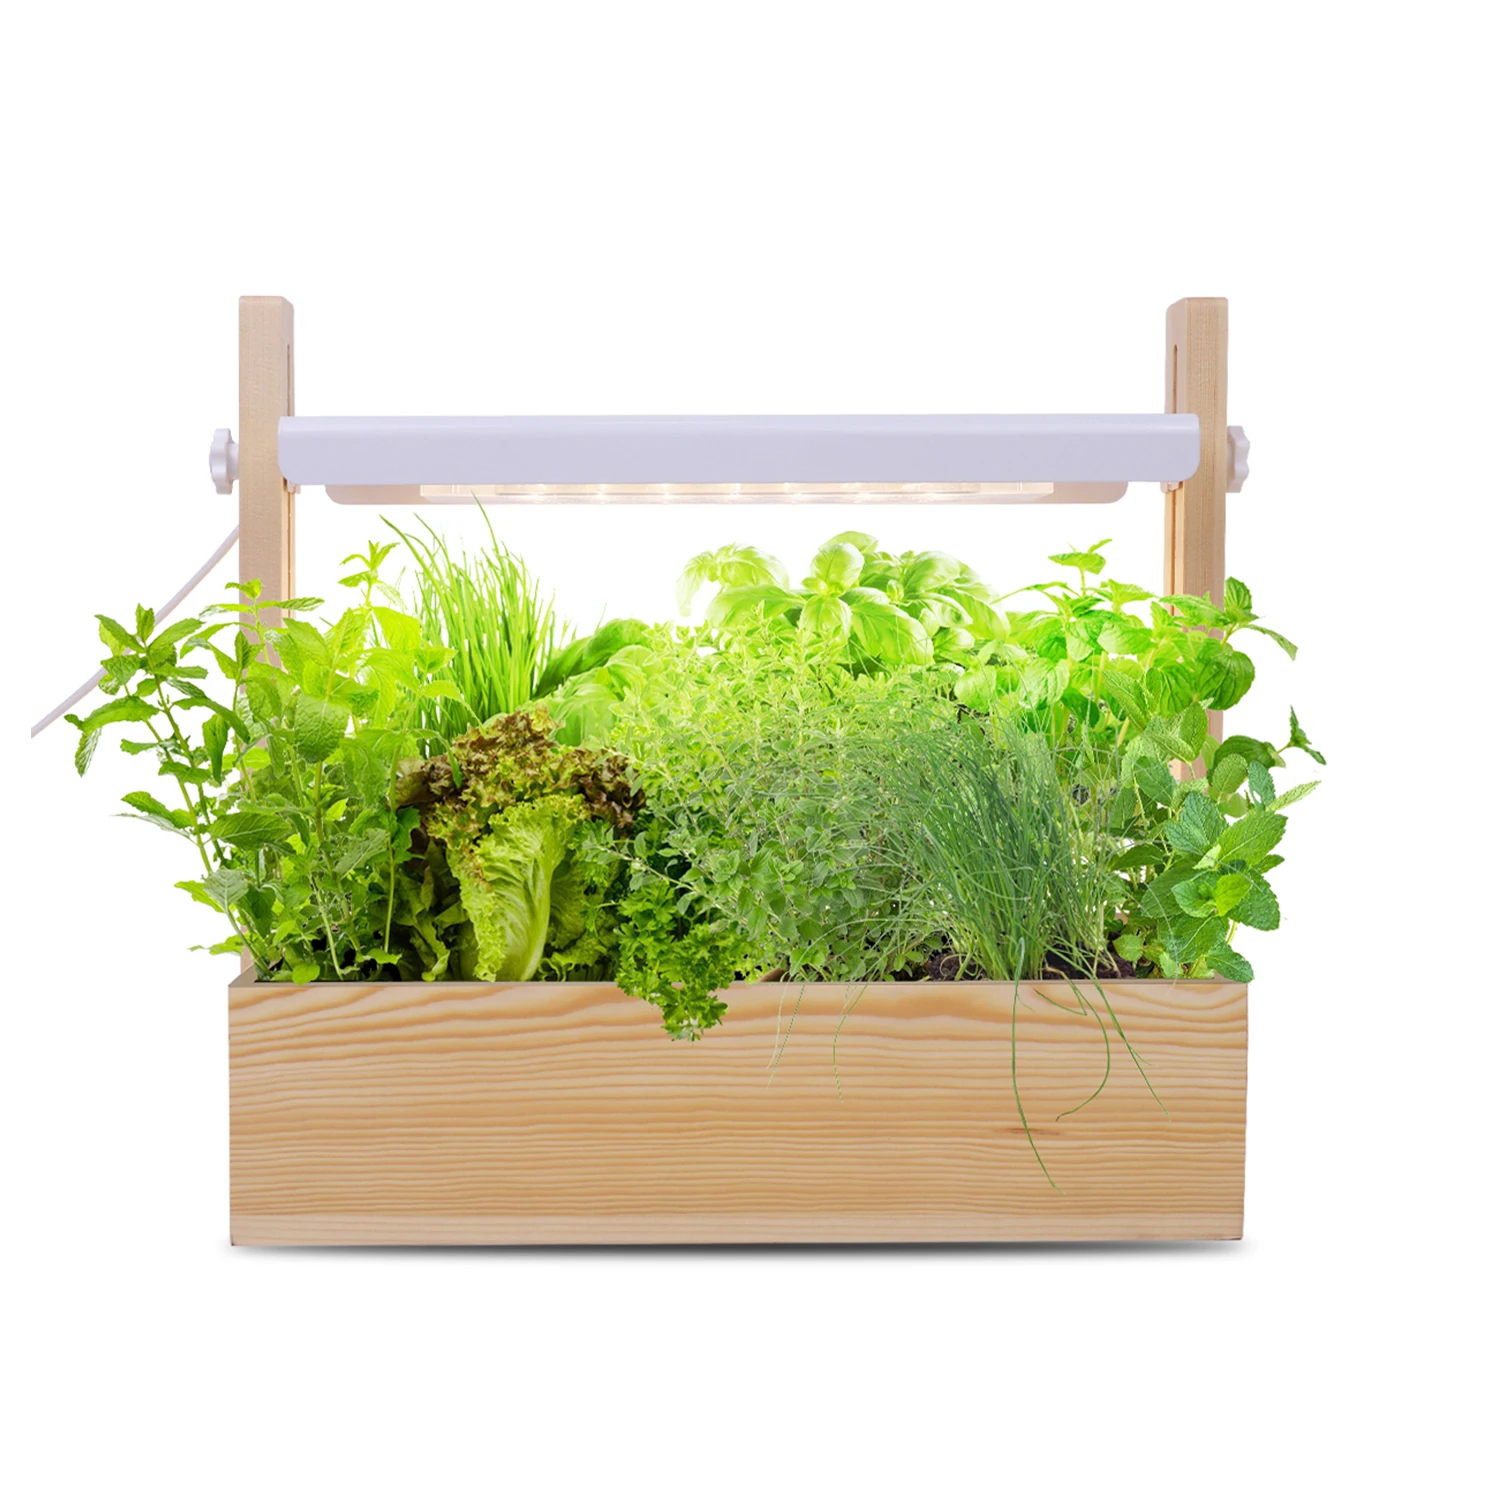 

LED 14w height adjustable planter wood herb garden detachable indoor planting click and grow smart indoor garden